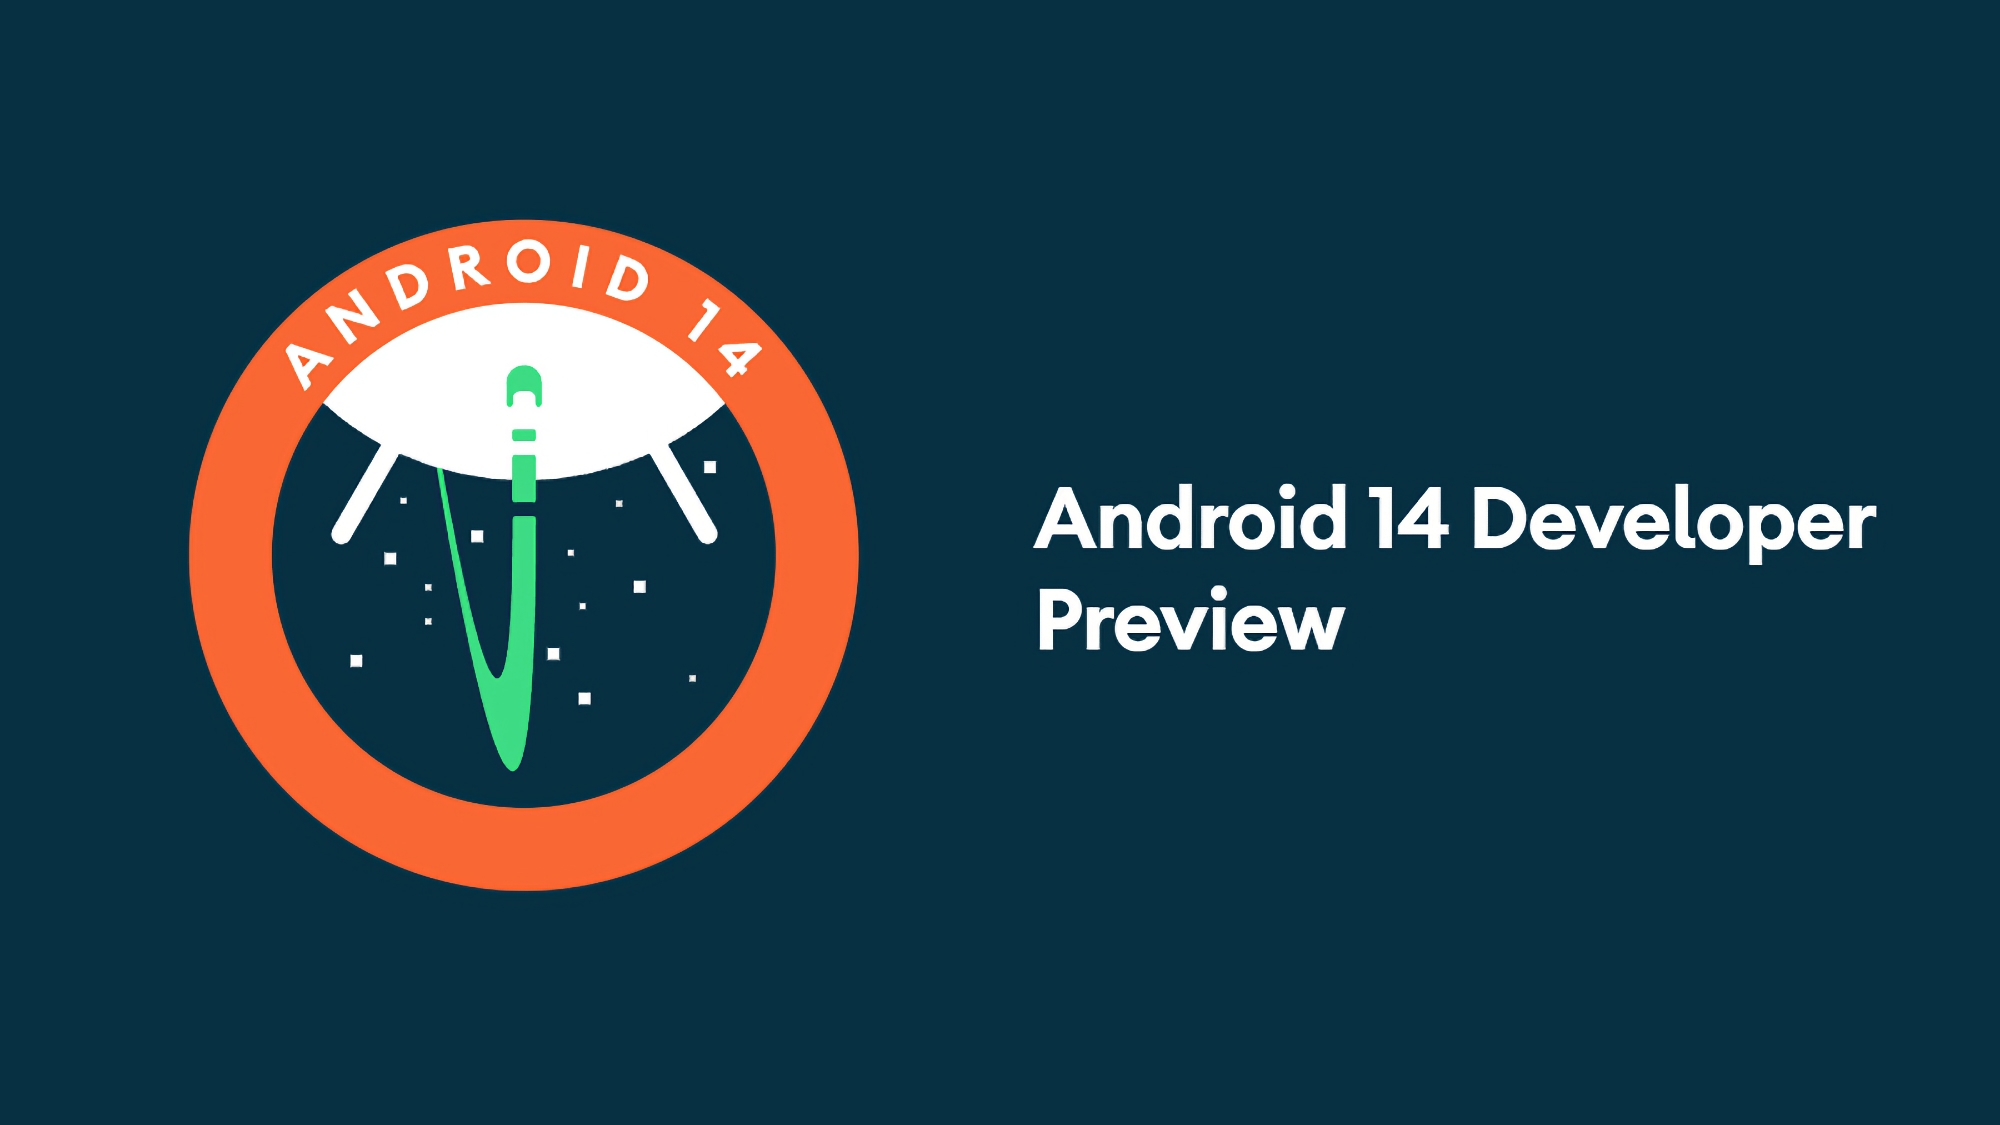 Unerwartet! Google veröffentlicht Android 14 Developer Preview für Pixel-Smartphones